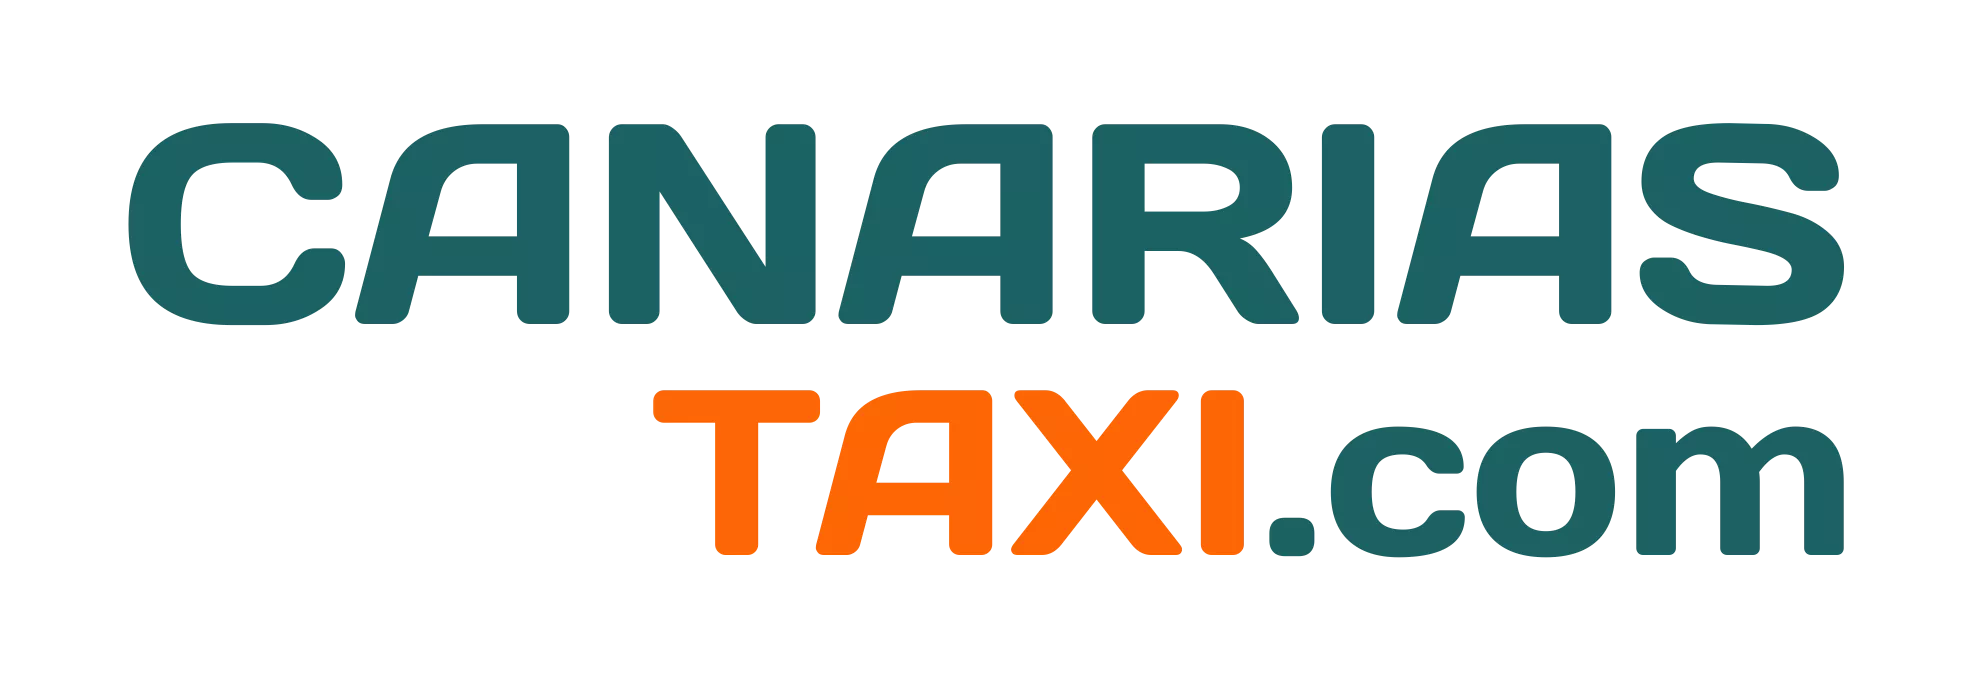 Canarias Taxi